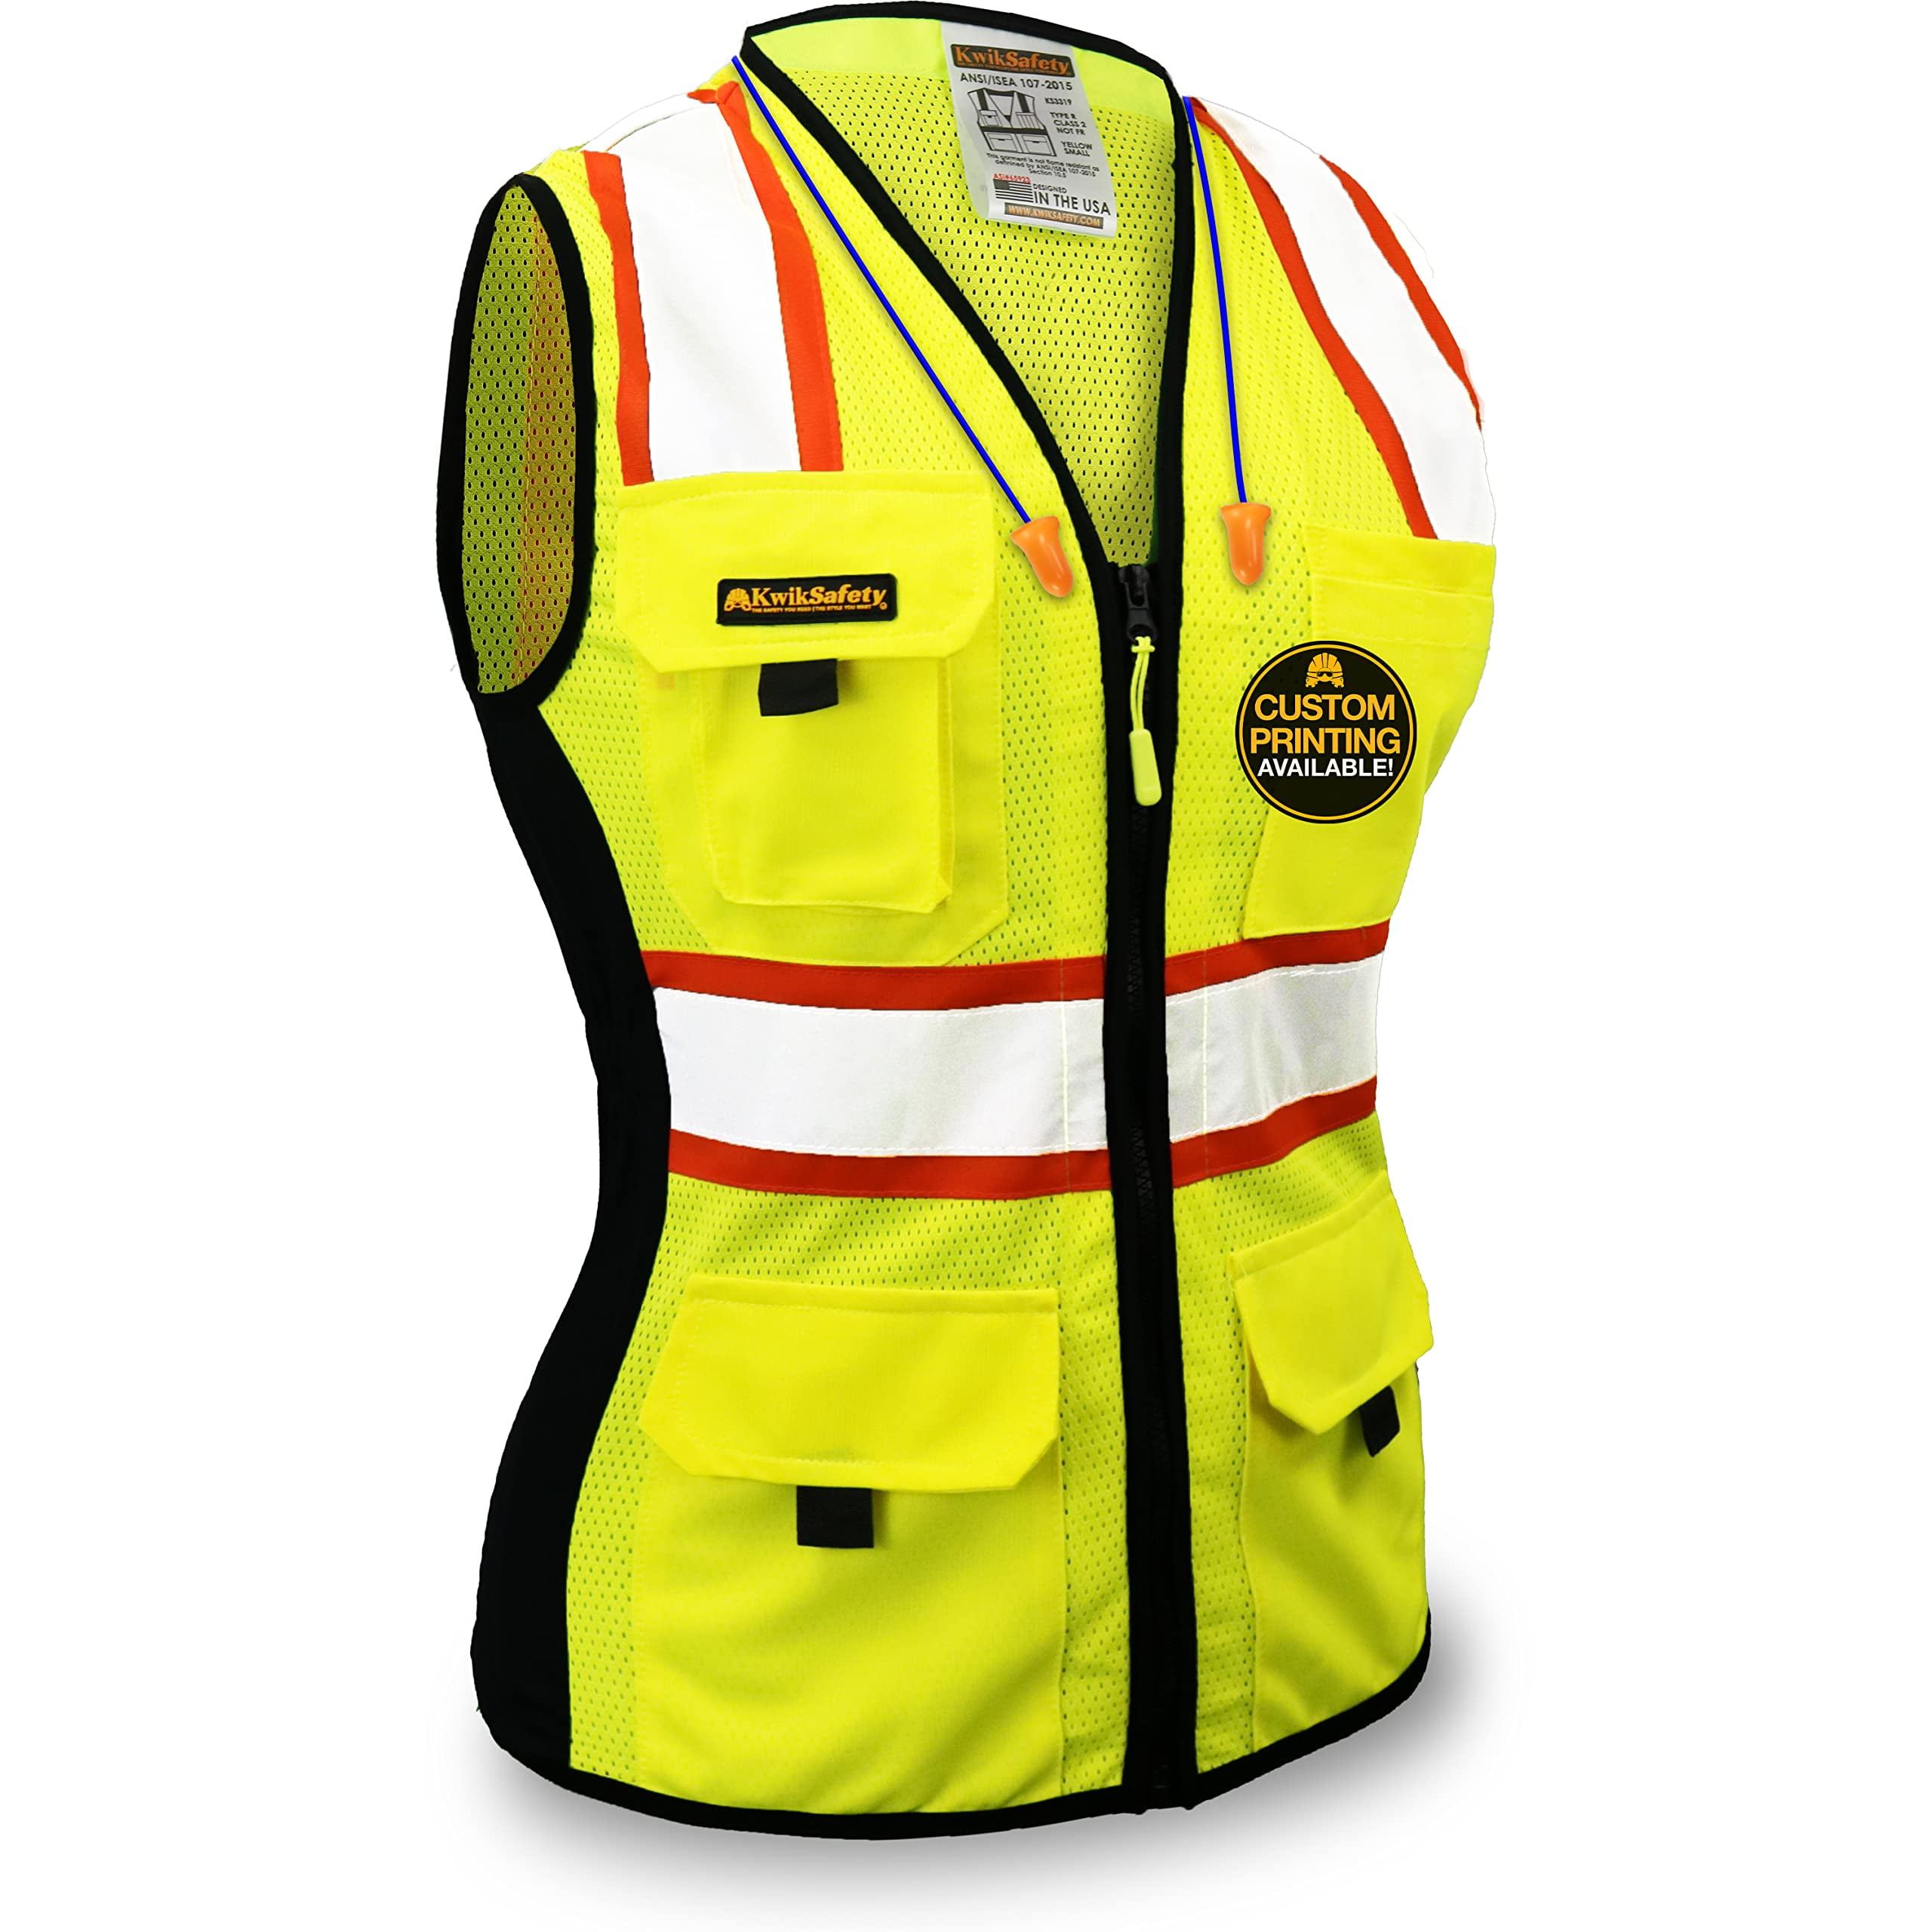 Black Hi Viz Vest printed SECURITY on Rear & Front Hi Visibility Tape 6 Sizes 